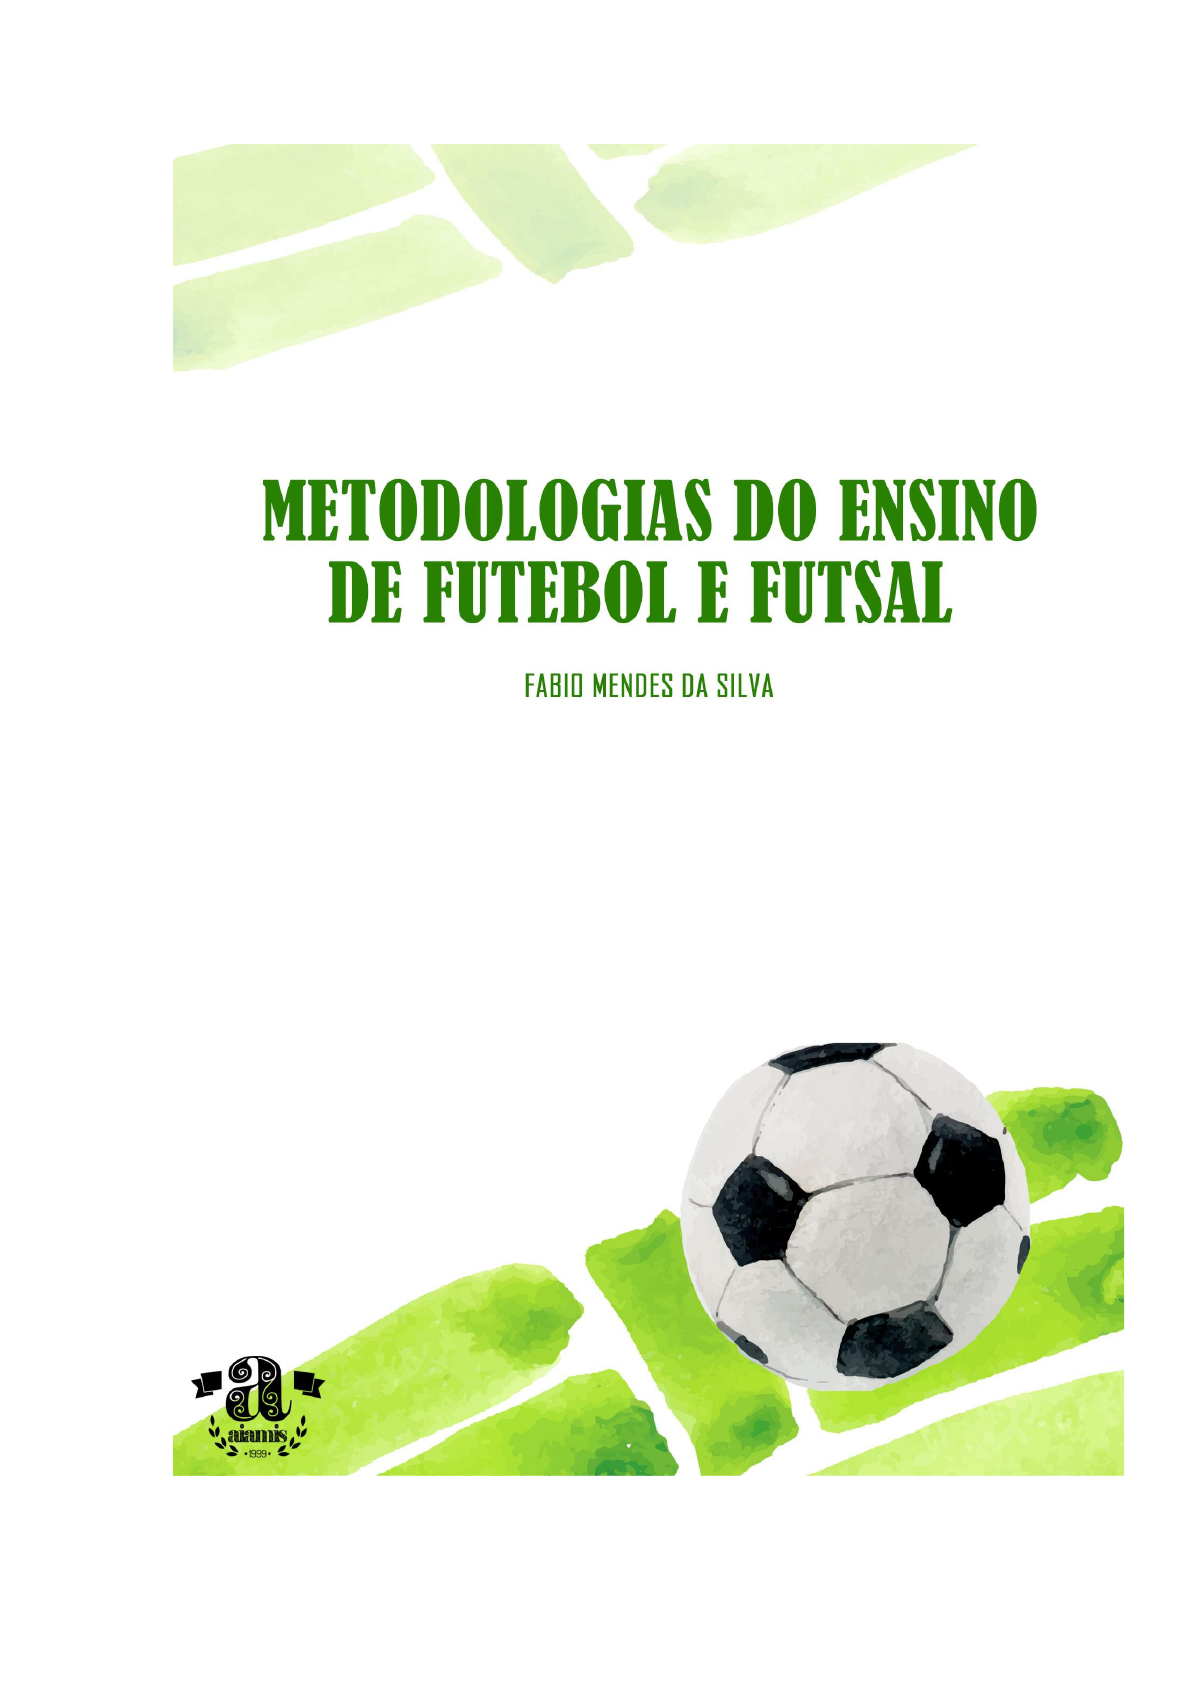 Futsal: o que é, regras, quadra e história - Significados